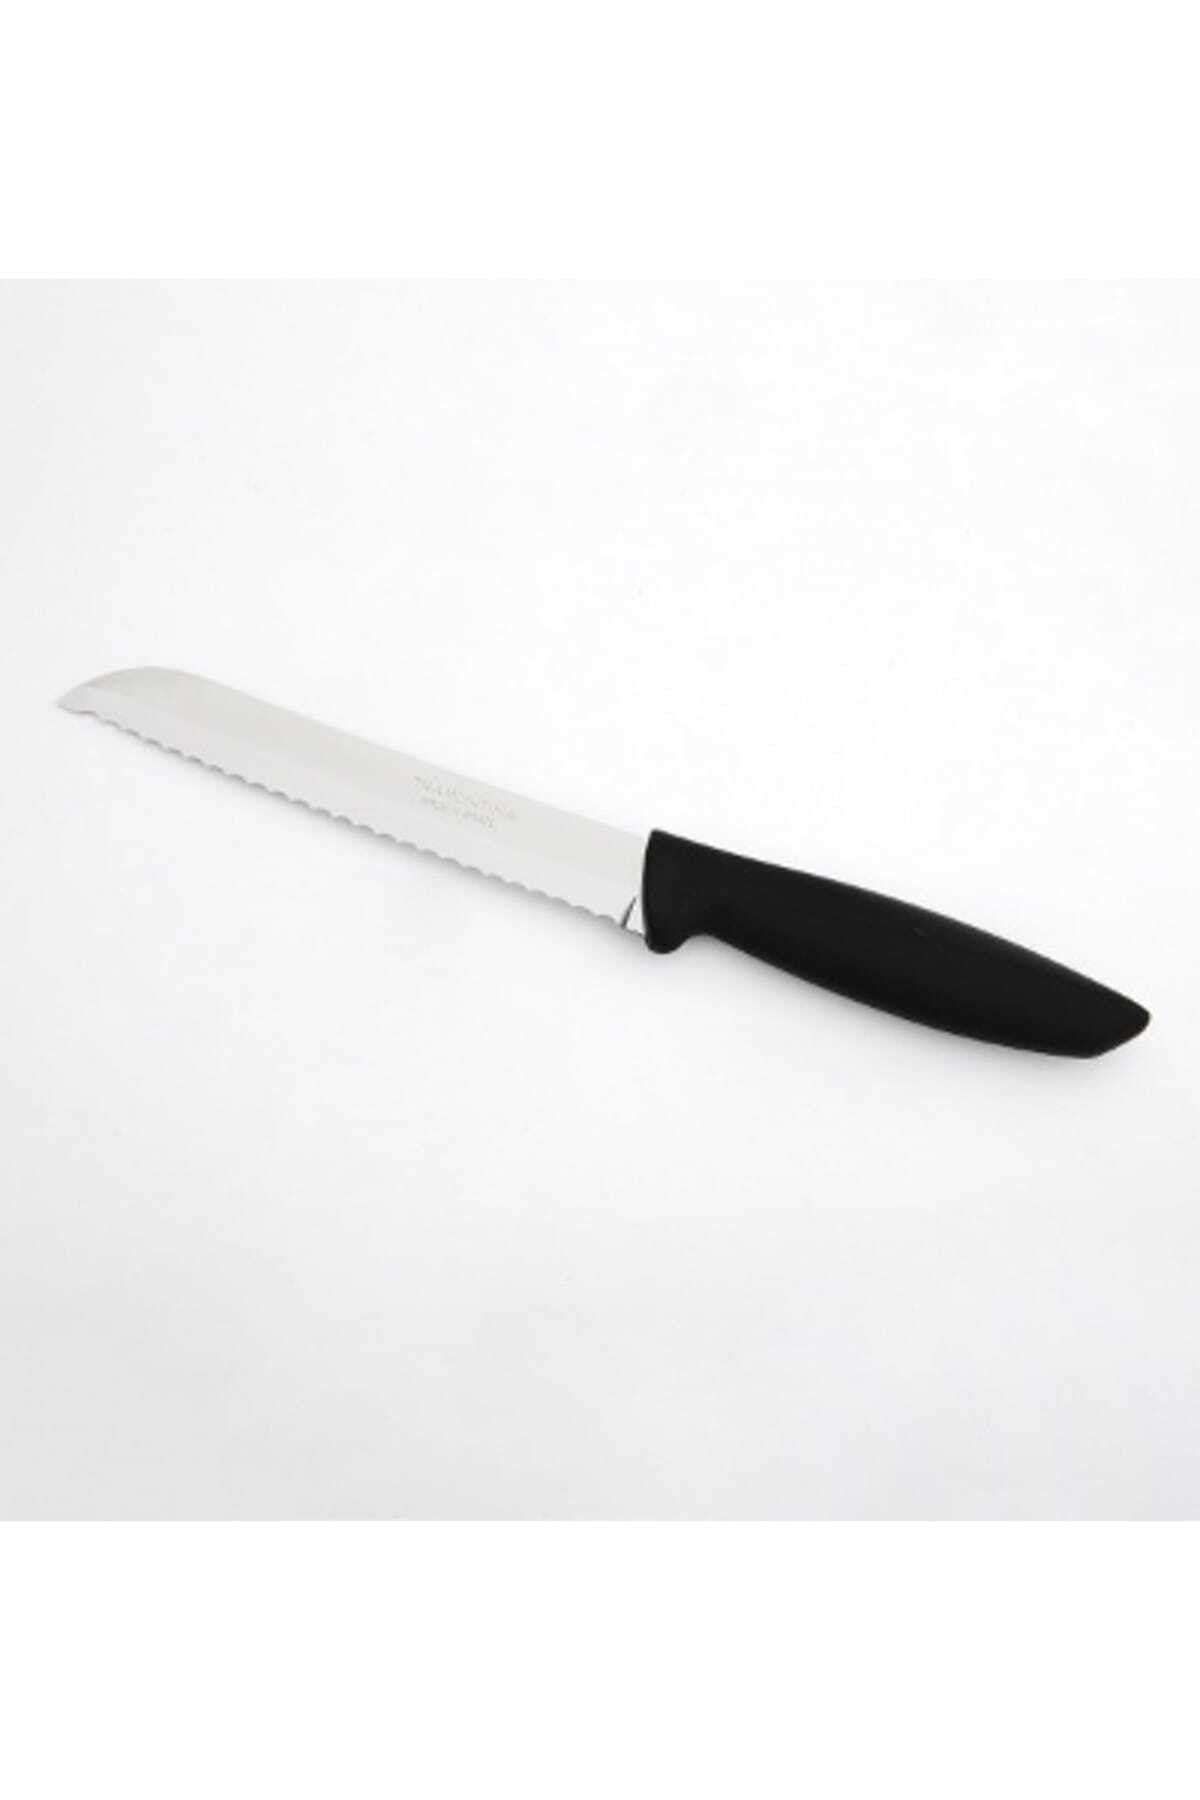 Ün-Ev Ekmek Bıçağı